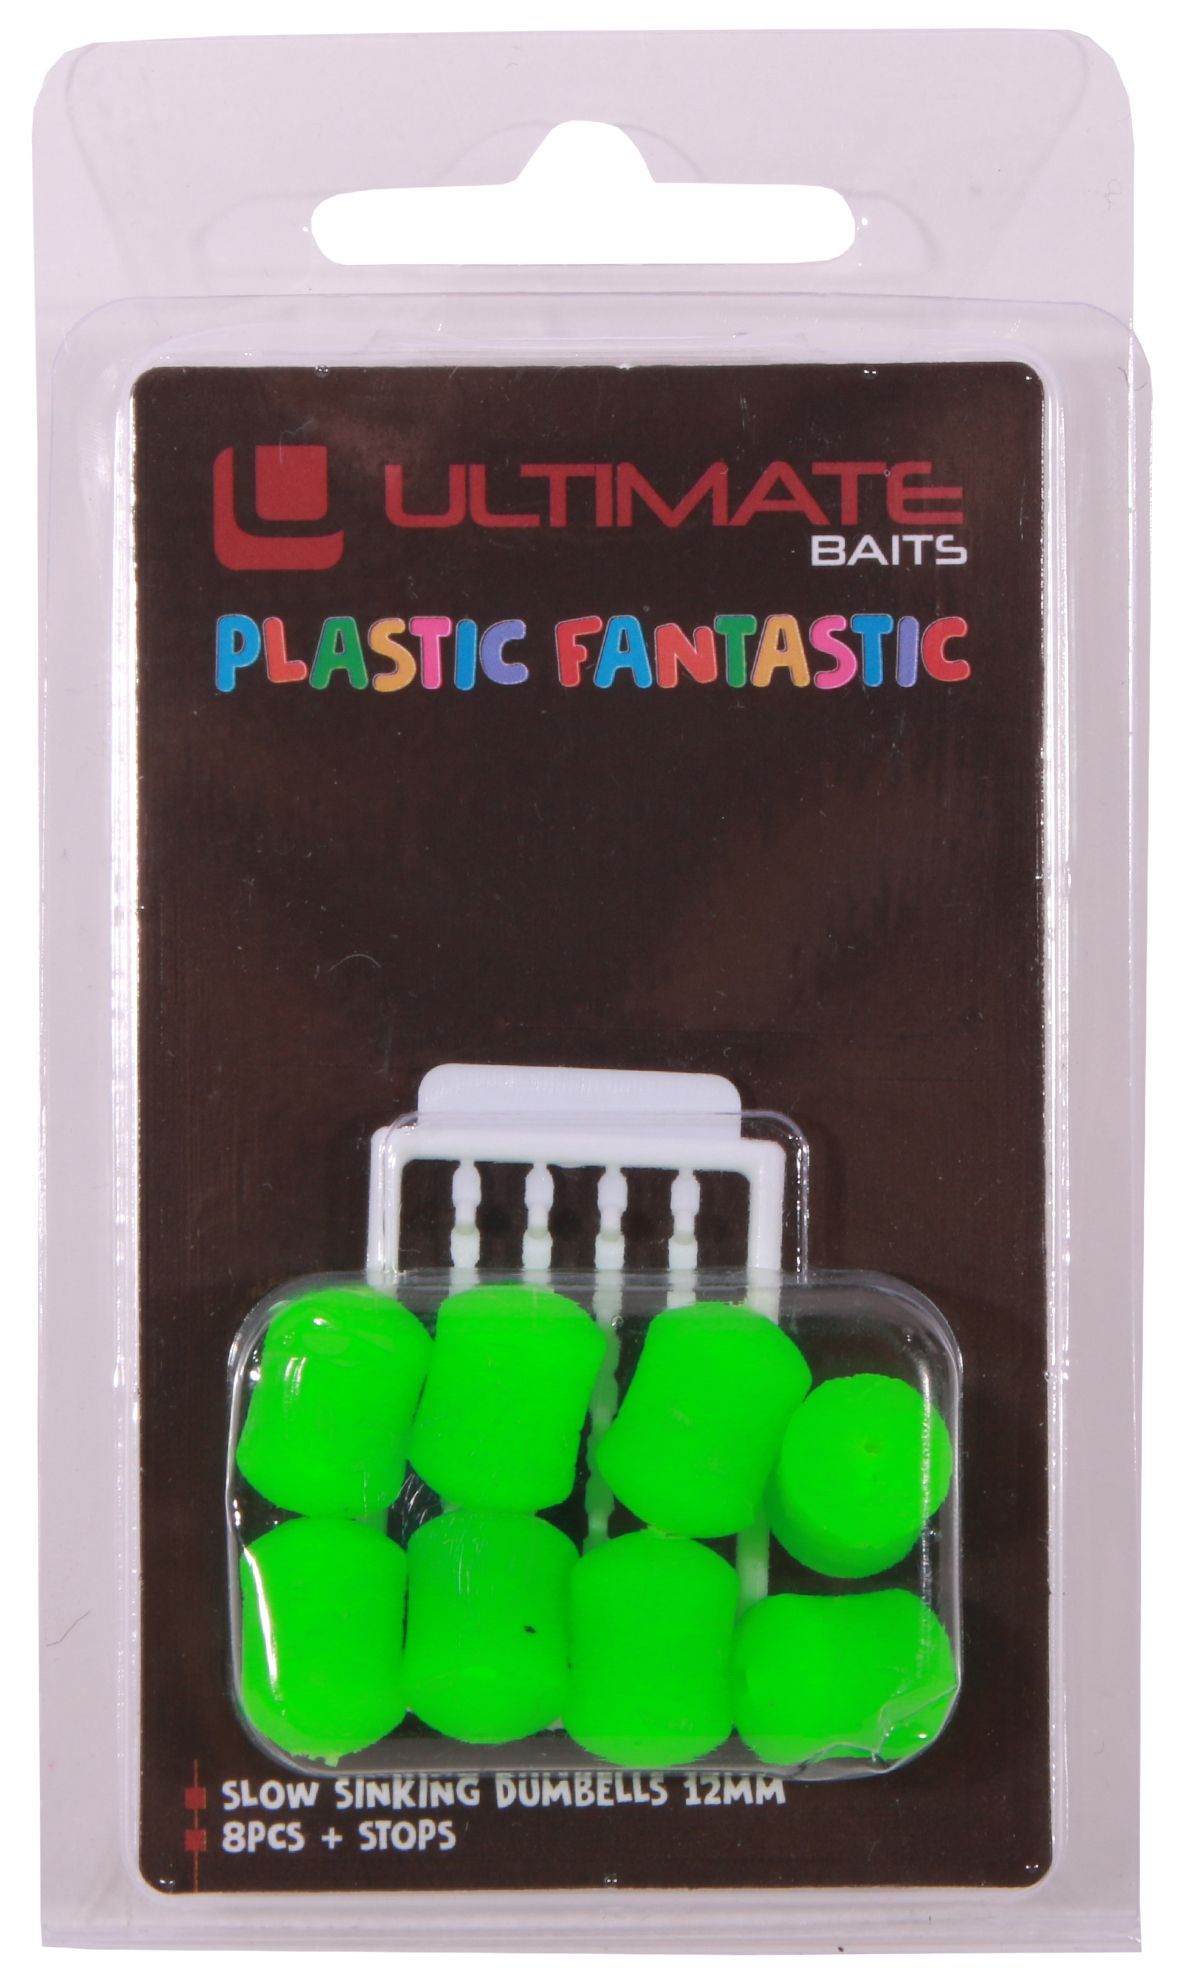 Ultimate Mancuernas Fantastic de Plástico 12mm